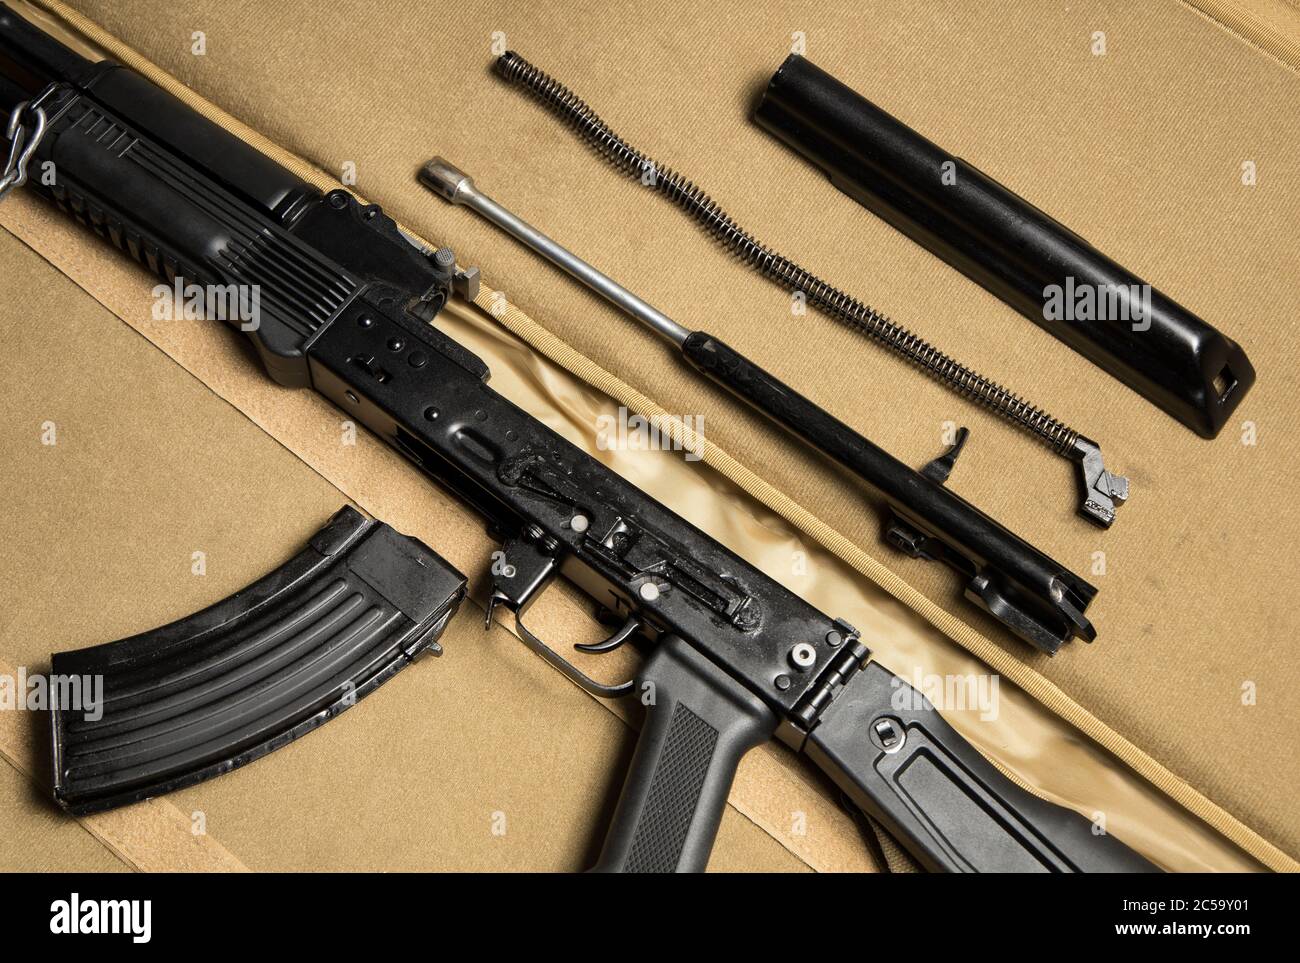 Vista superior de las partes básicas de un rifle de asalto desmontado. Kalashnikov ruso MKK-104 (última variante AK-47). Foto de stock